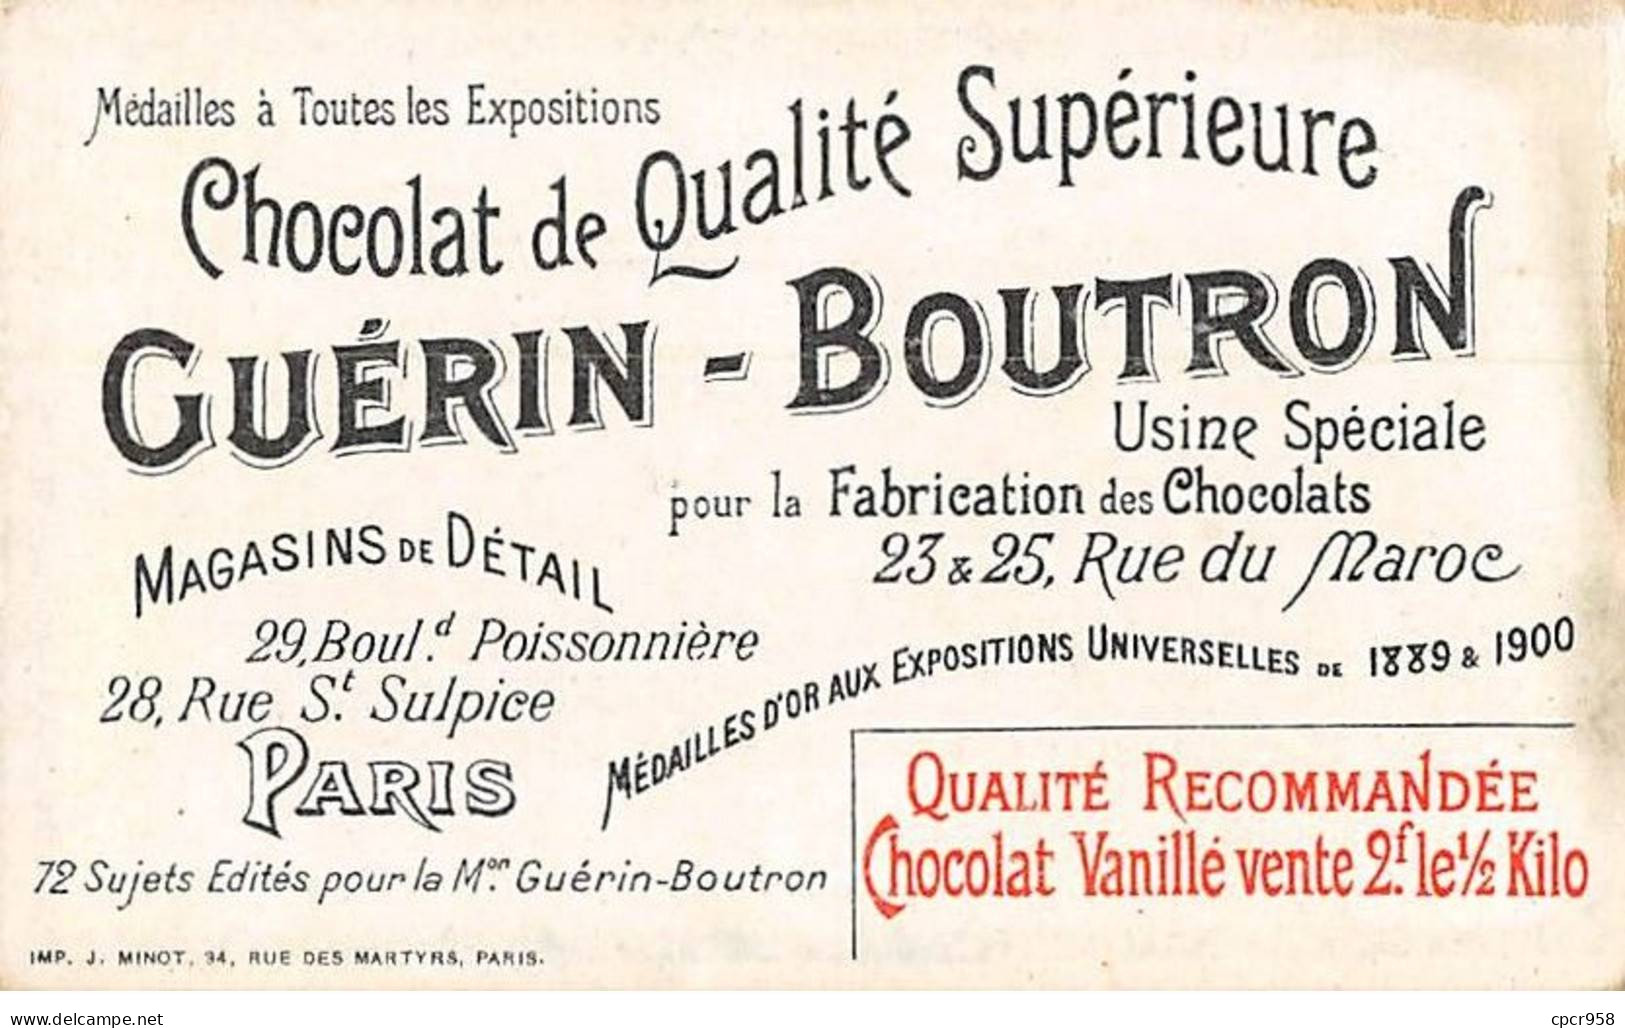 Chromos -COR10498 -Chocolat Guérin-Boutron-Le Théâtre à Travers Les âges-Comédie- Acteurs - Louis XV - 6x10 Cm Environ - Guerin Boutron